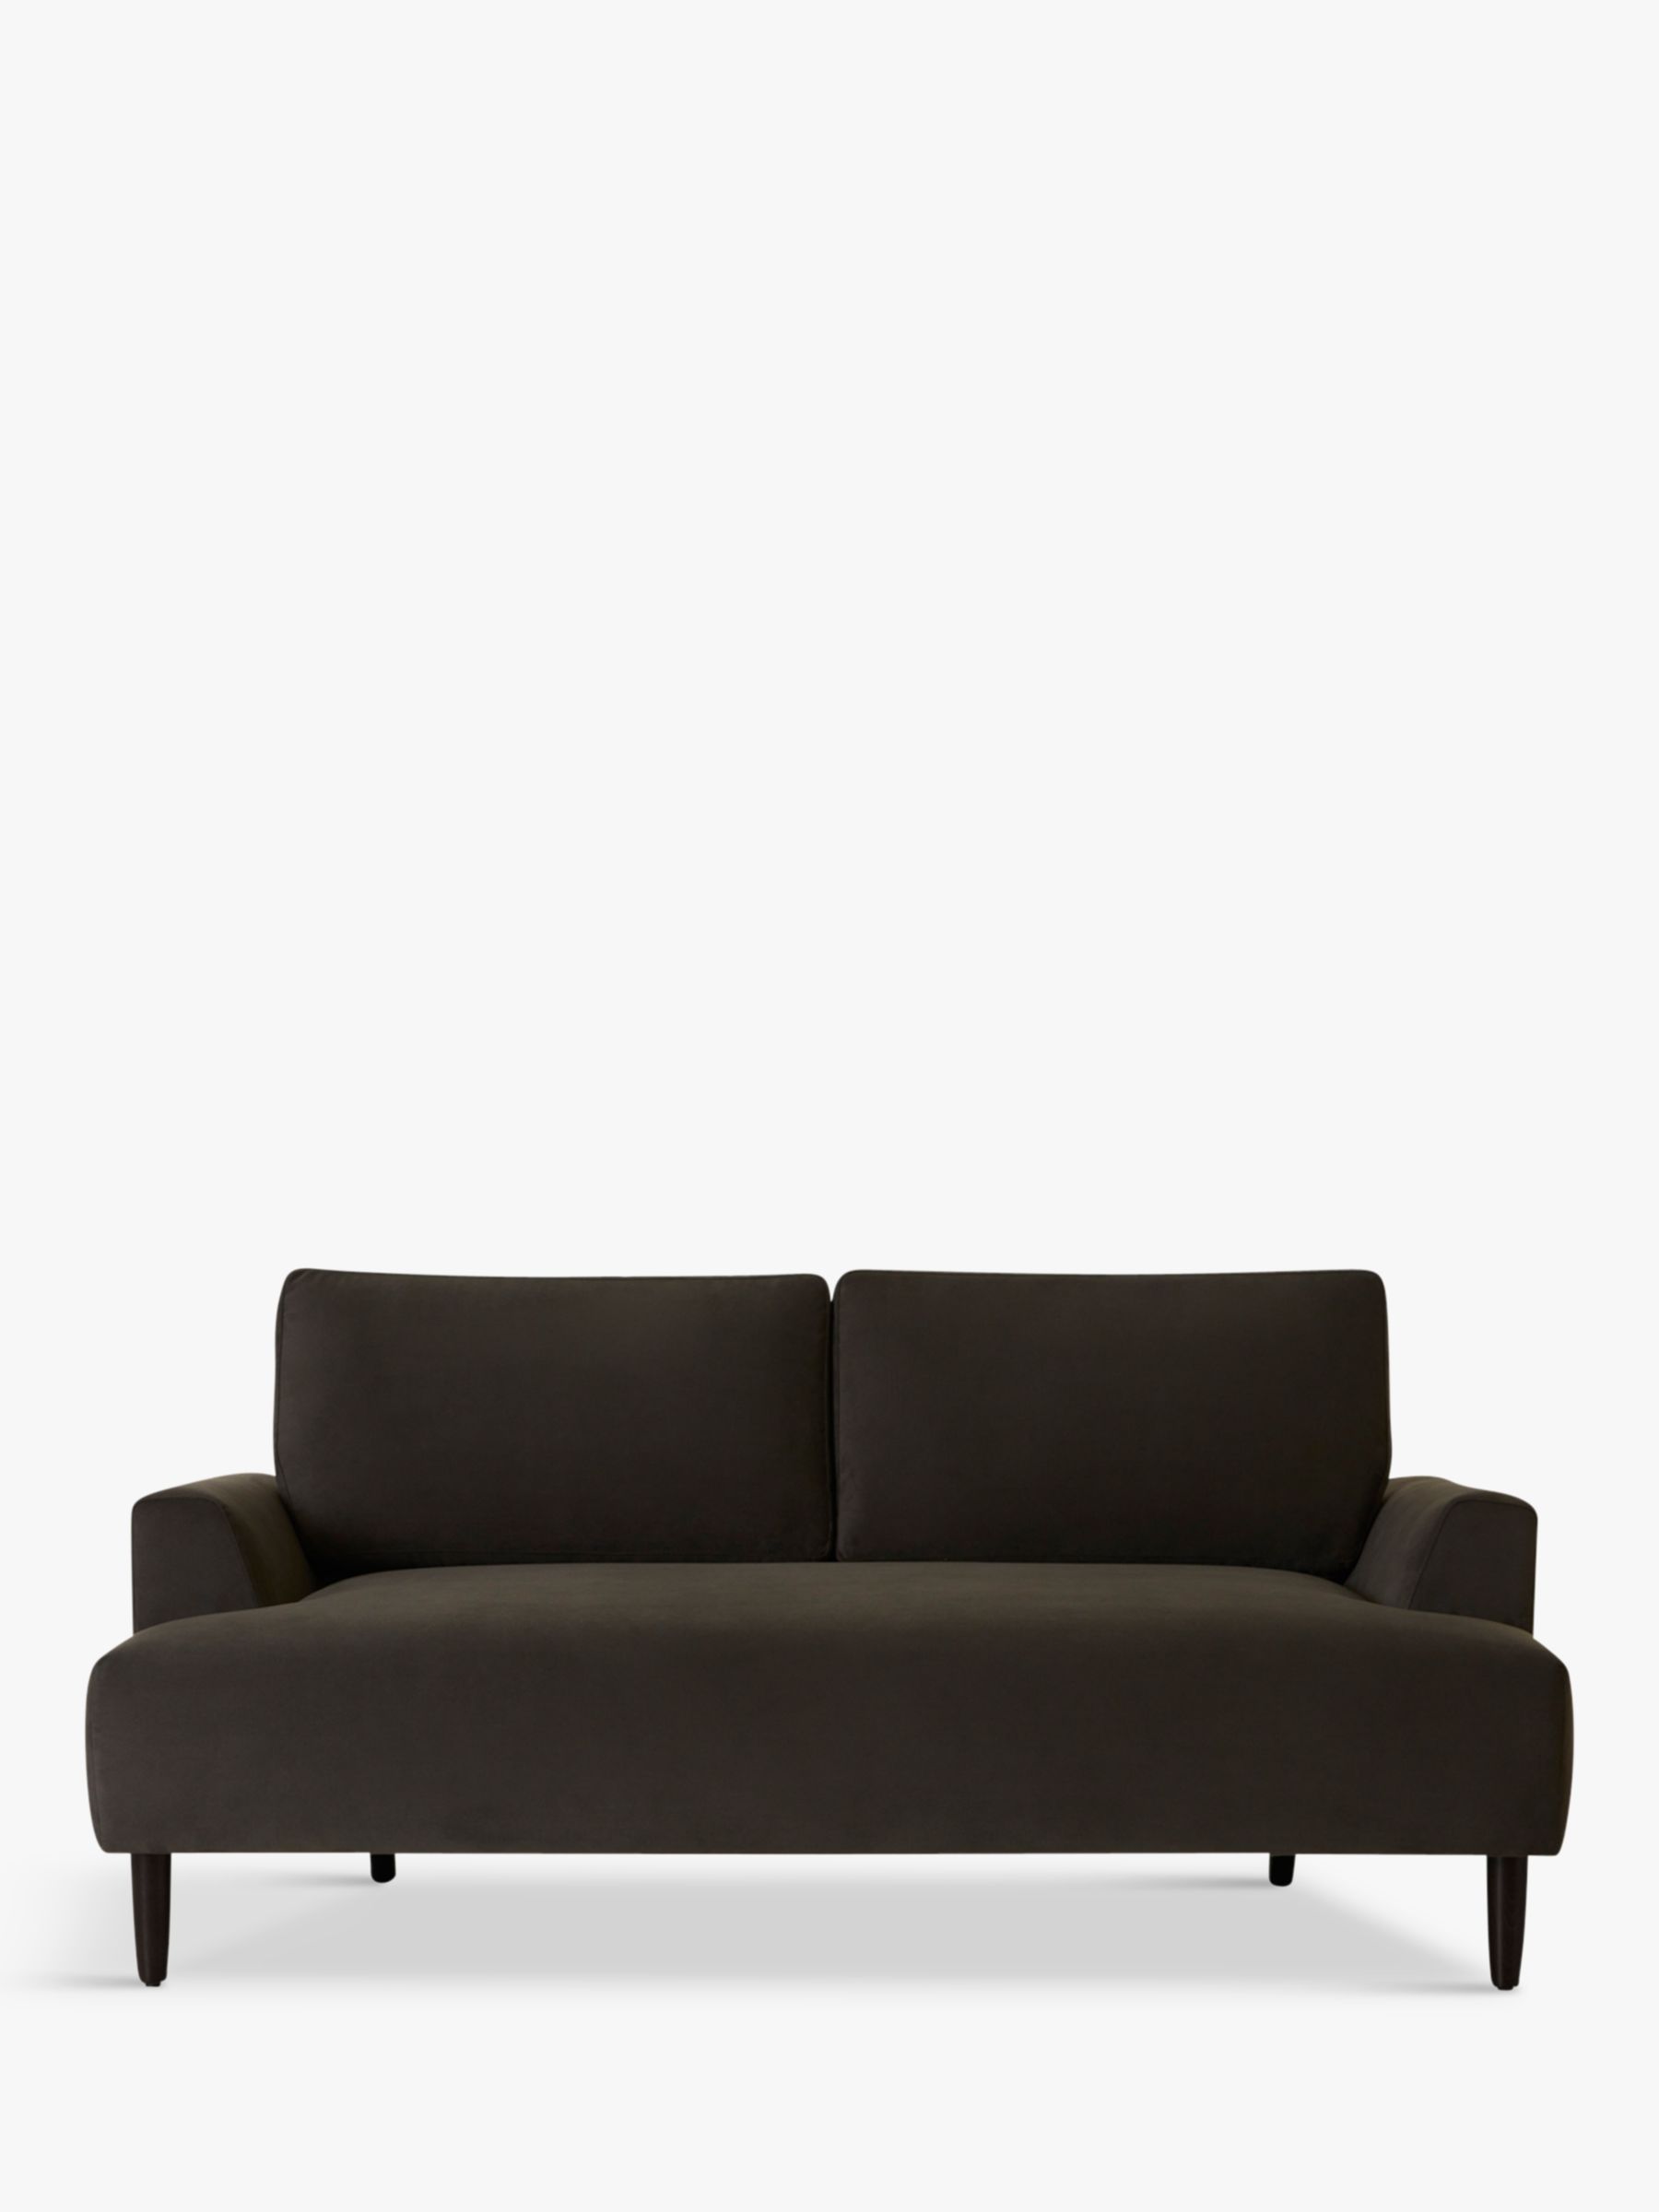 Model 05 Range, Swyft Model 05 Medium 2 Seater Sofa, Charcoal Velvet